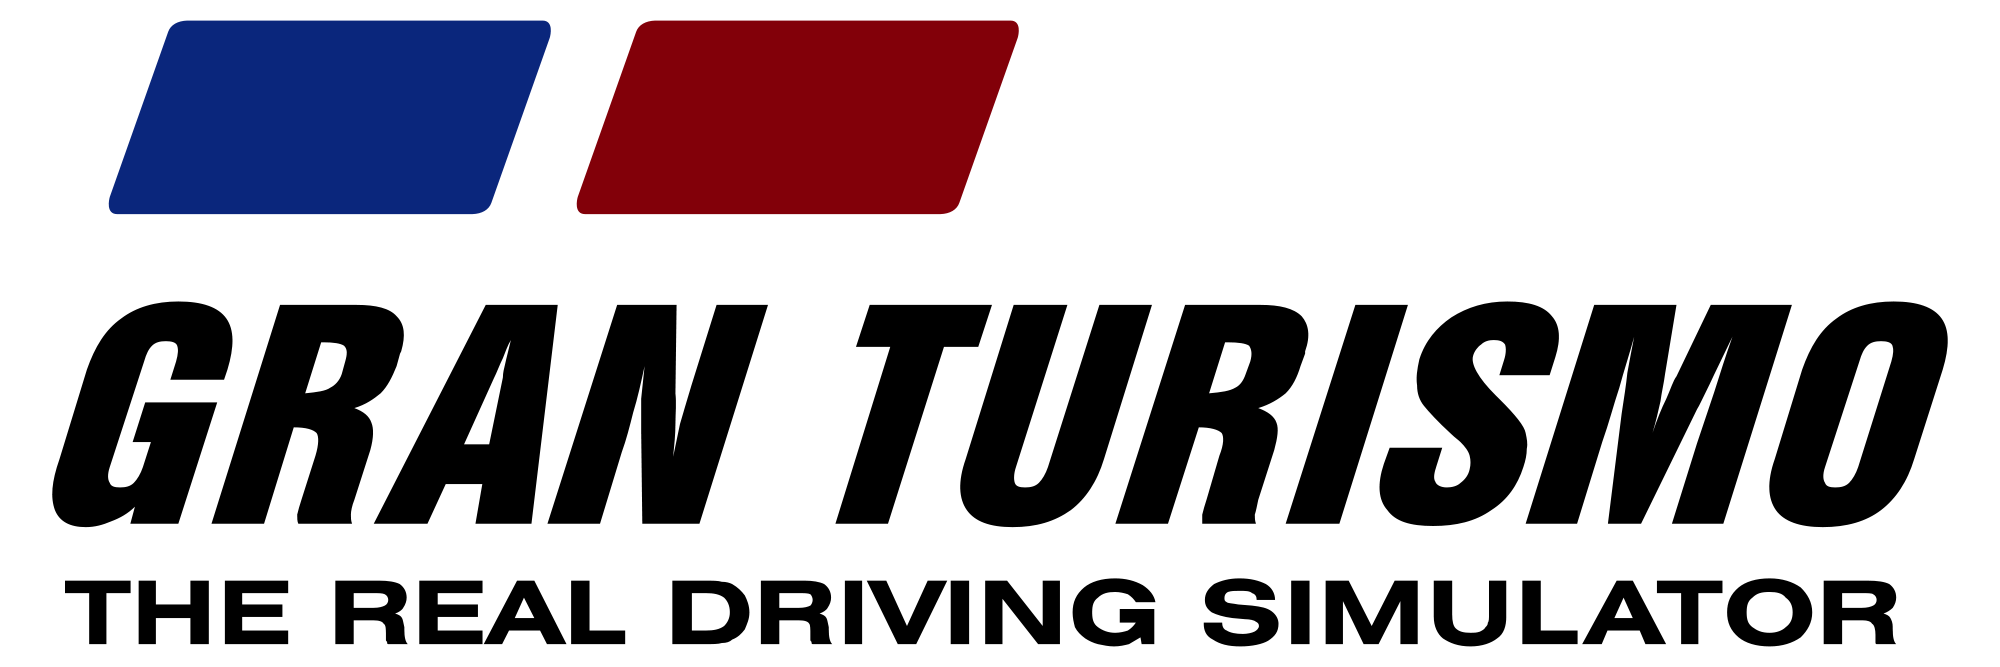 Gran Turismo Logo Image PNG I